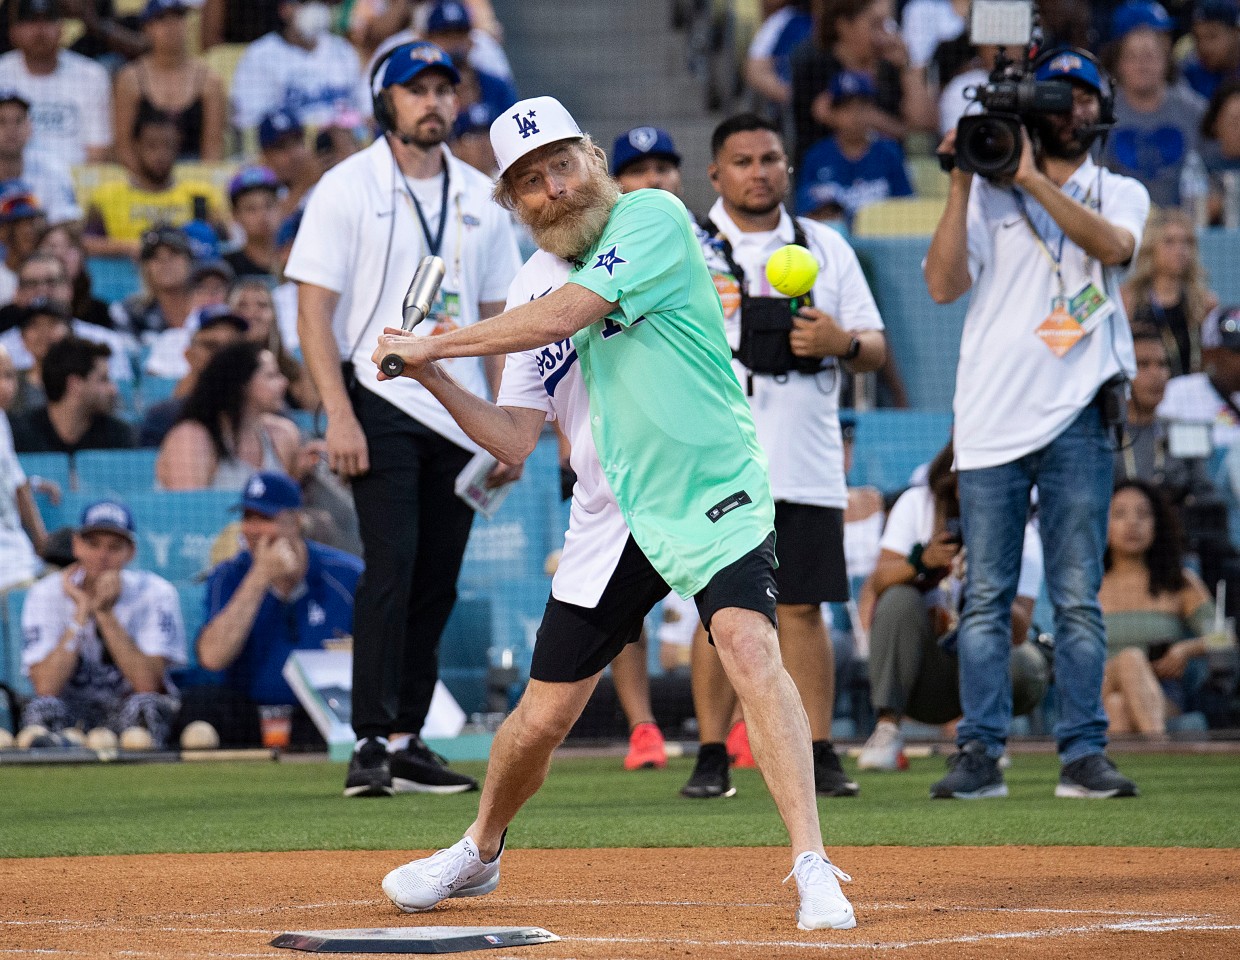 Bryan Cranston sorgt beim Softball-Spiel in Los Angeles für eine Überraschung.